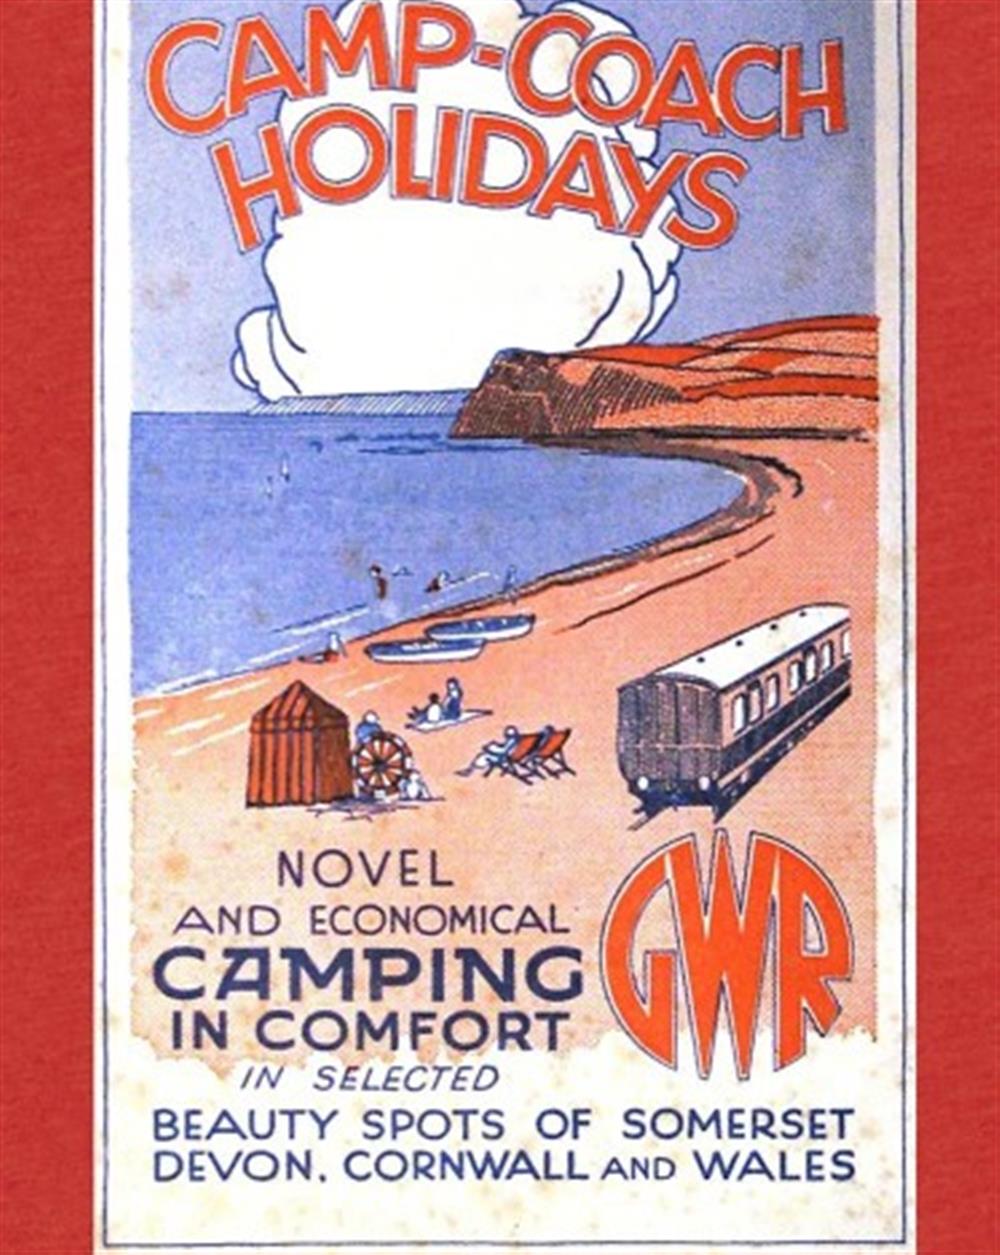 The carriage invokes a bygone era of British seaside holidays.